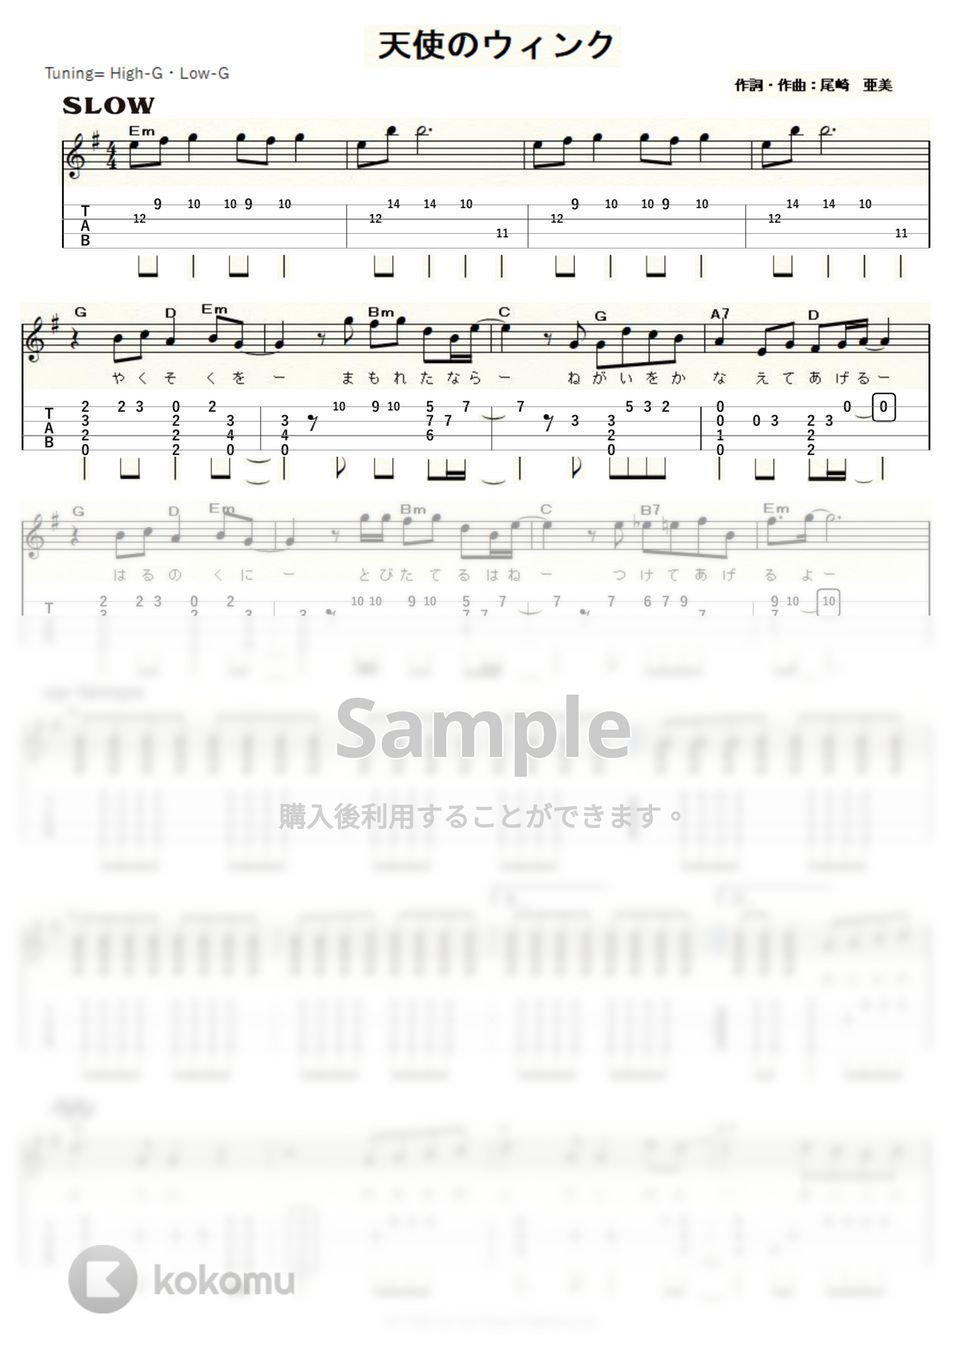 松田聖子 - 天使のウィンク (ｳｸﾚﾚｿﾛ / High-G,Low-G / 中級) by ukulelepapa